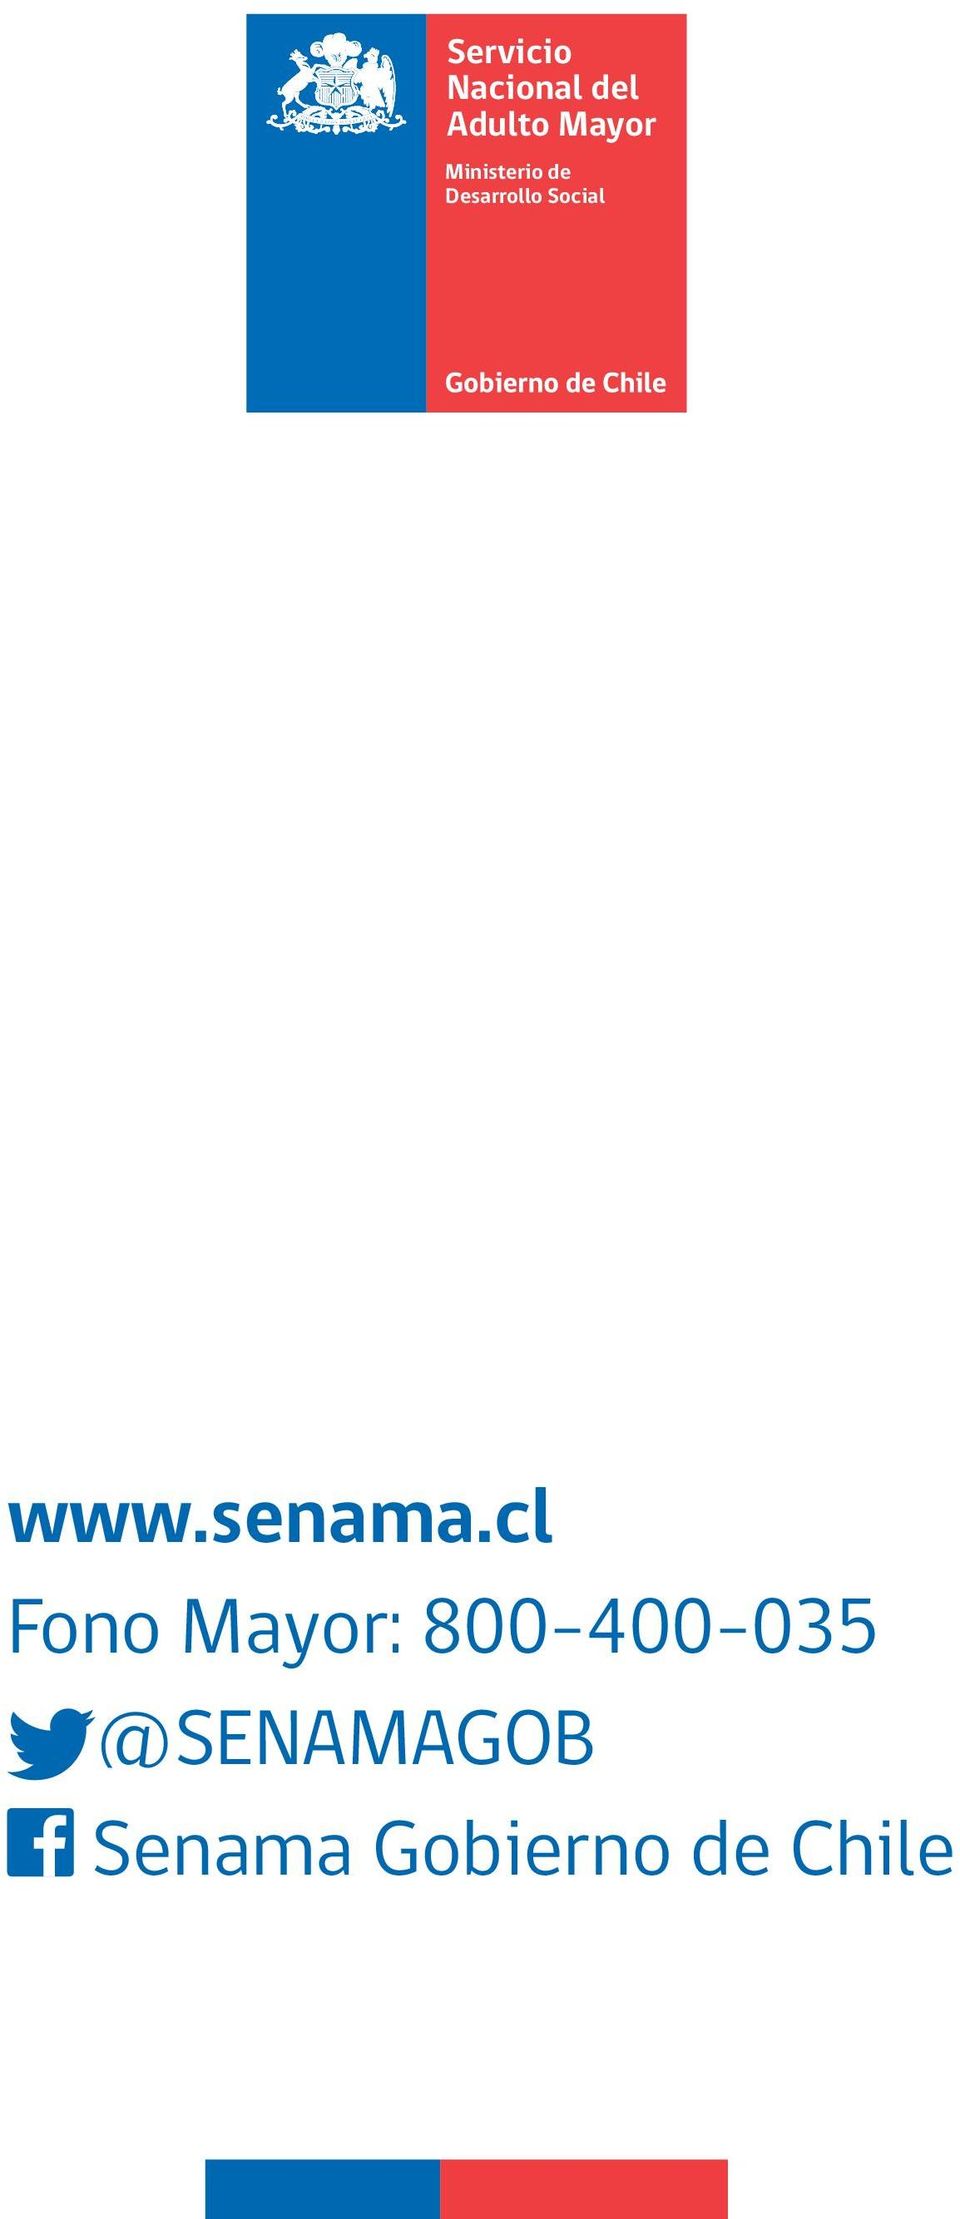 www.senama.